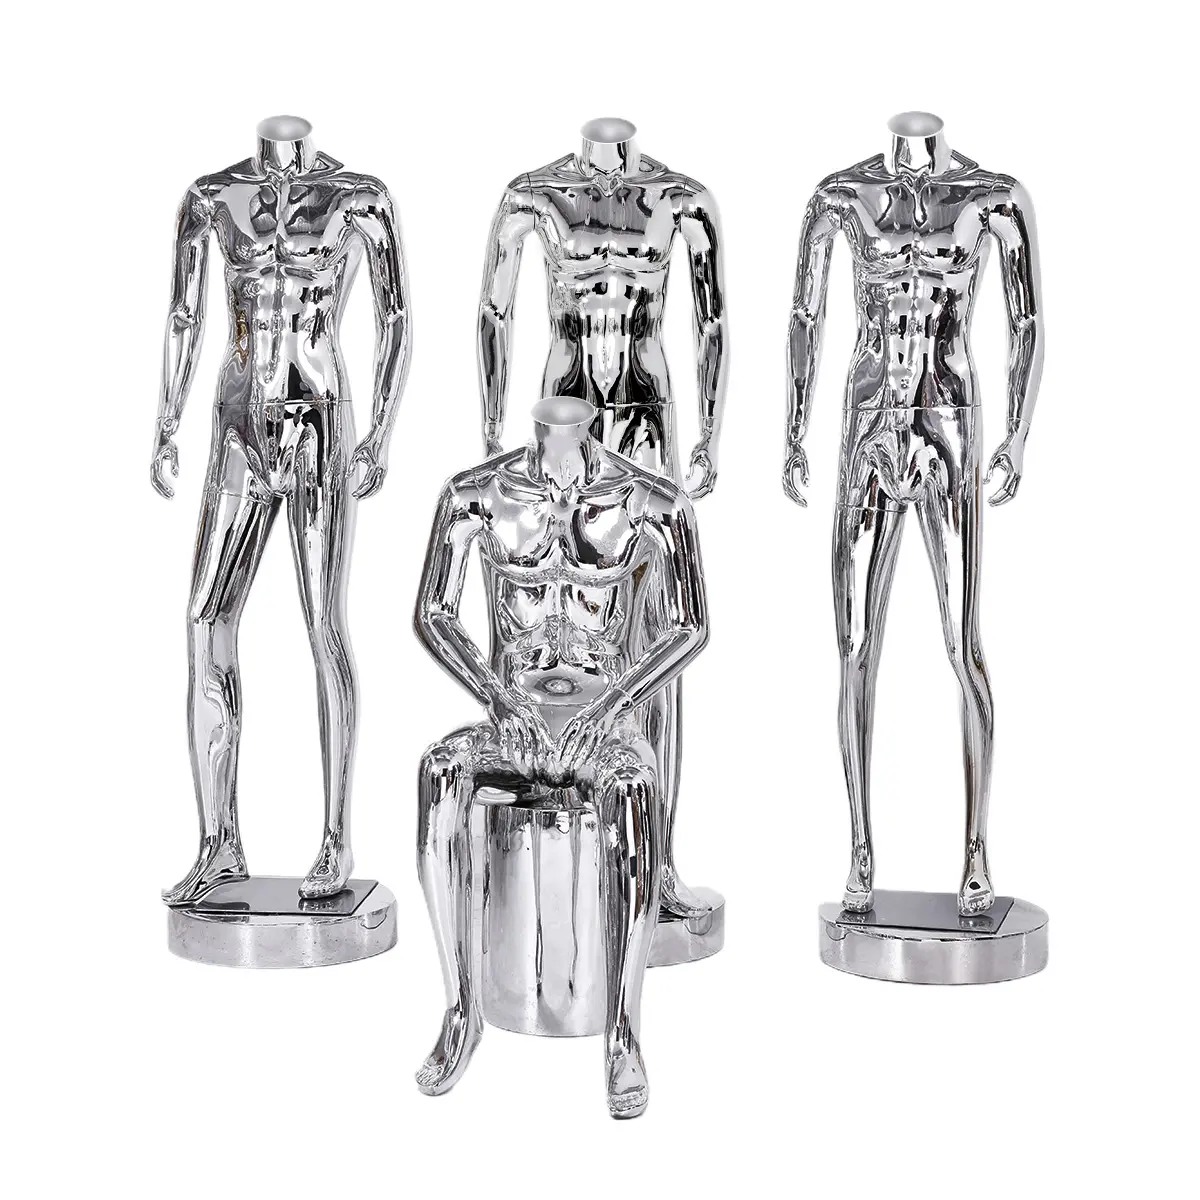 Оптовая продажа, роскошный хромированный серебристый манекен без головы, одежда для мужчин, глянцевый манекен для всего тела